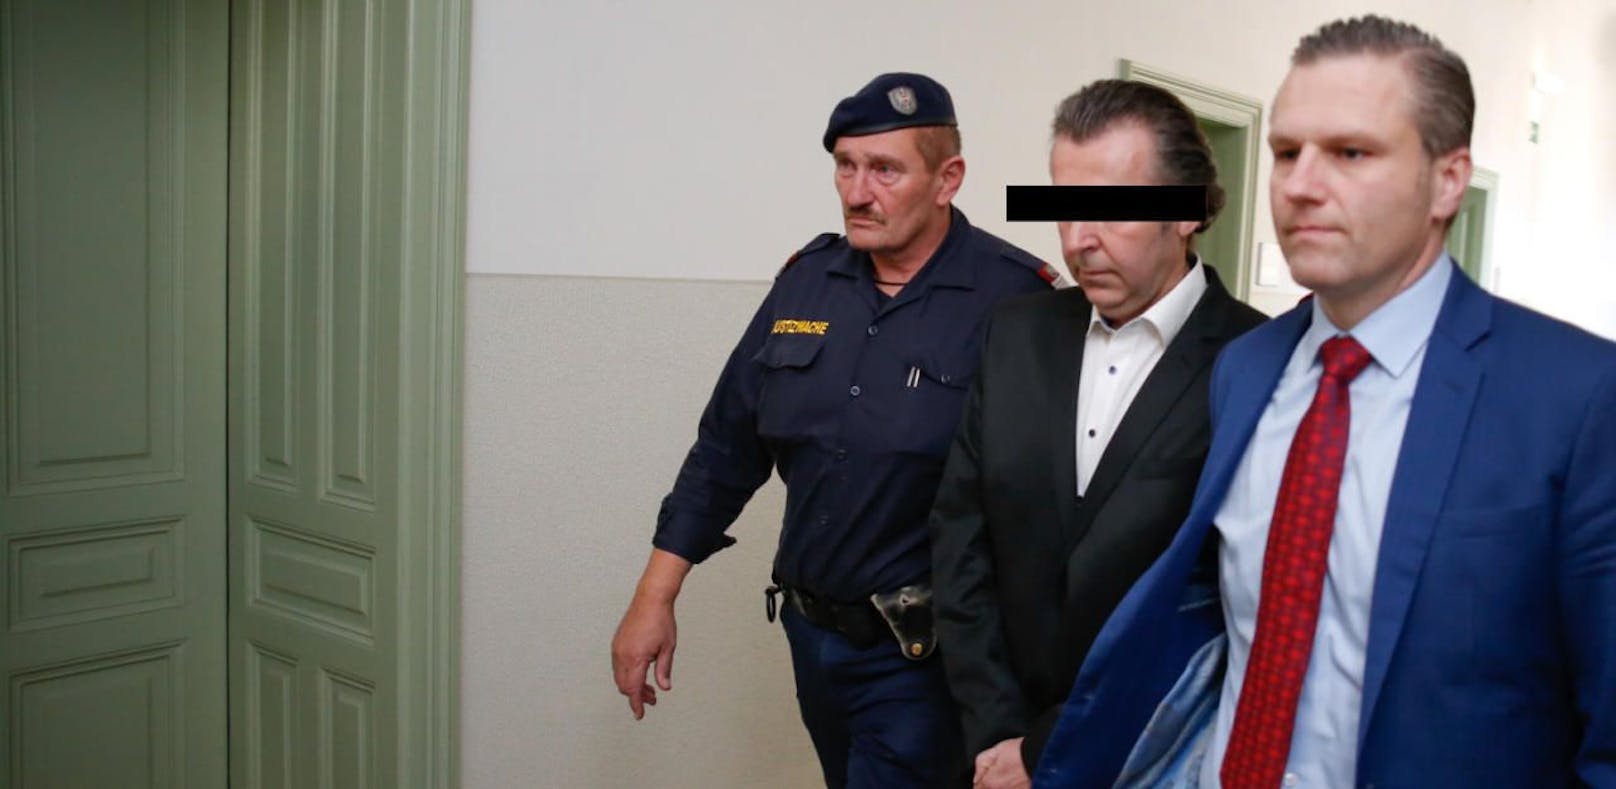 Dorfmeister-Ex vor Gericht: 4,5 Jahre Haft